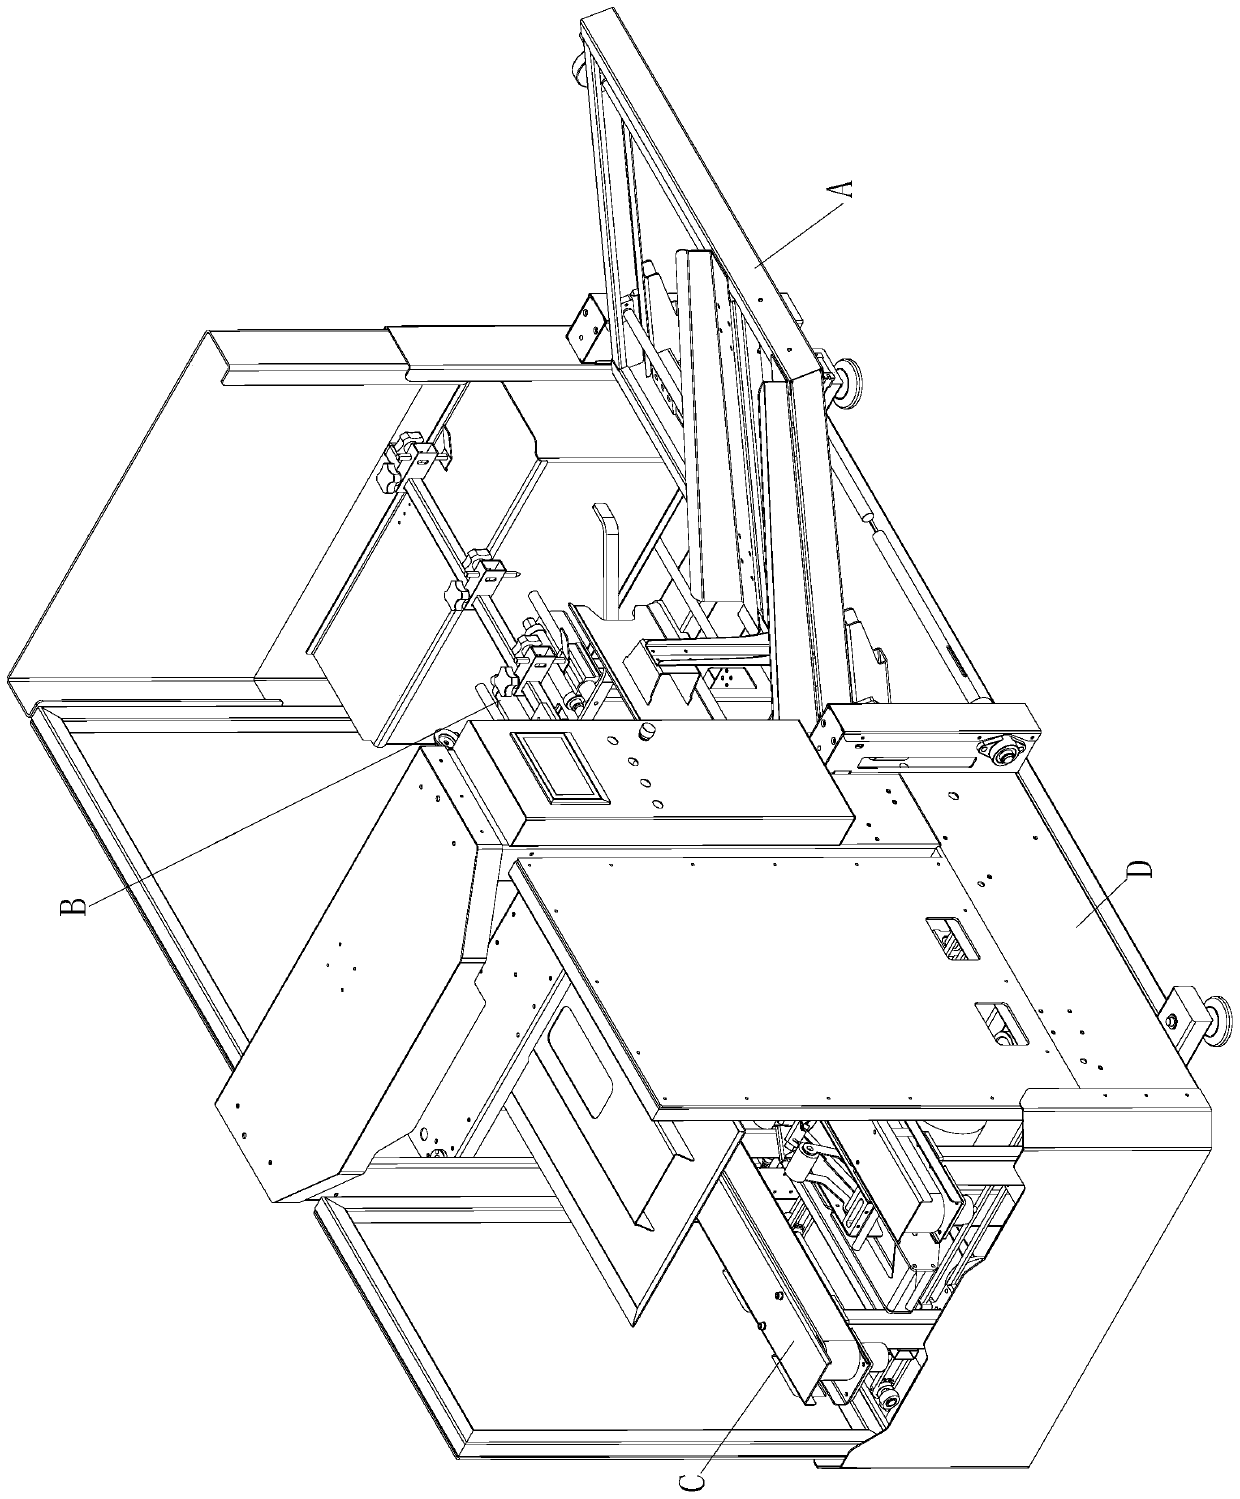 Automatic box-opening and bottom-sealing machine